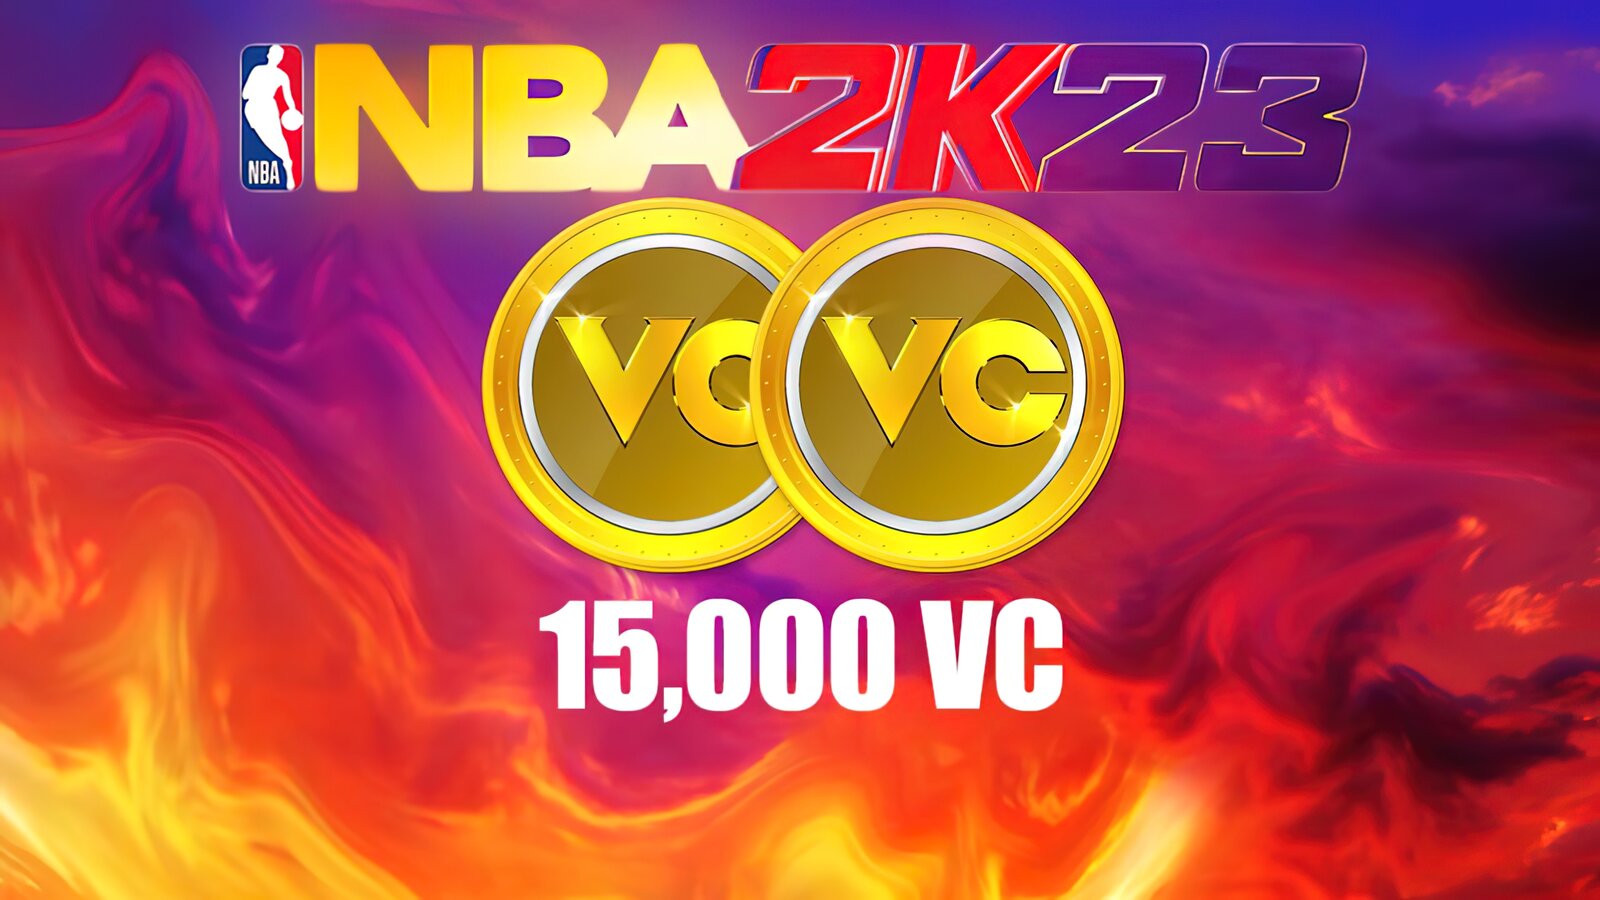 NBA 2K23 - 15,000 VC